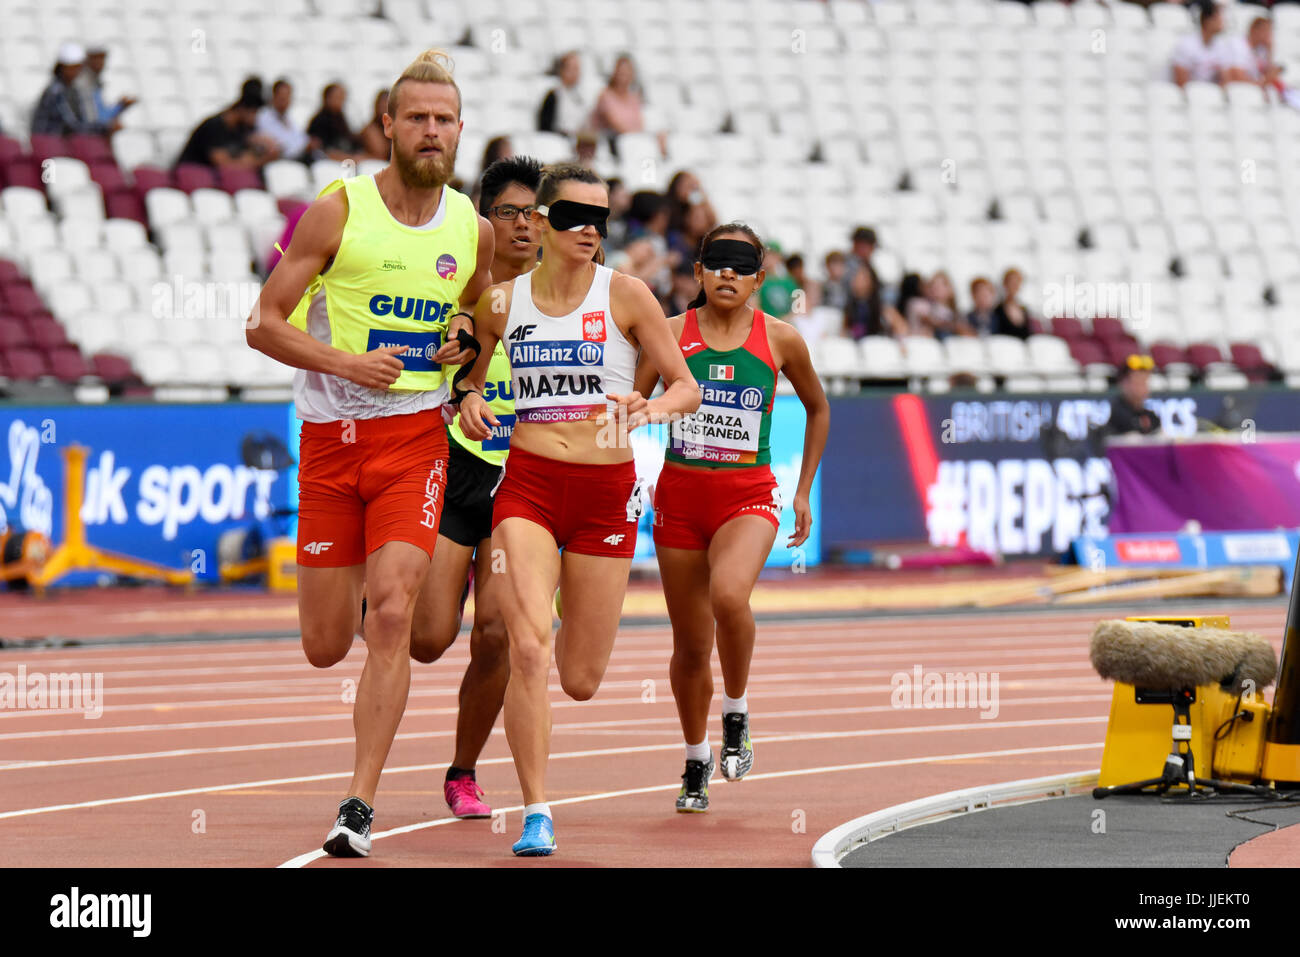 Joanna Mazur participe aux Championnats du monde de para-athlétisme au Stade Olympique de Londres. Femme T11 800 M.. Malvoyants Banque D'Images